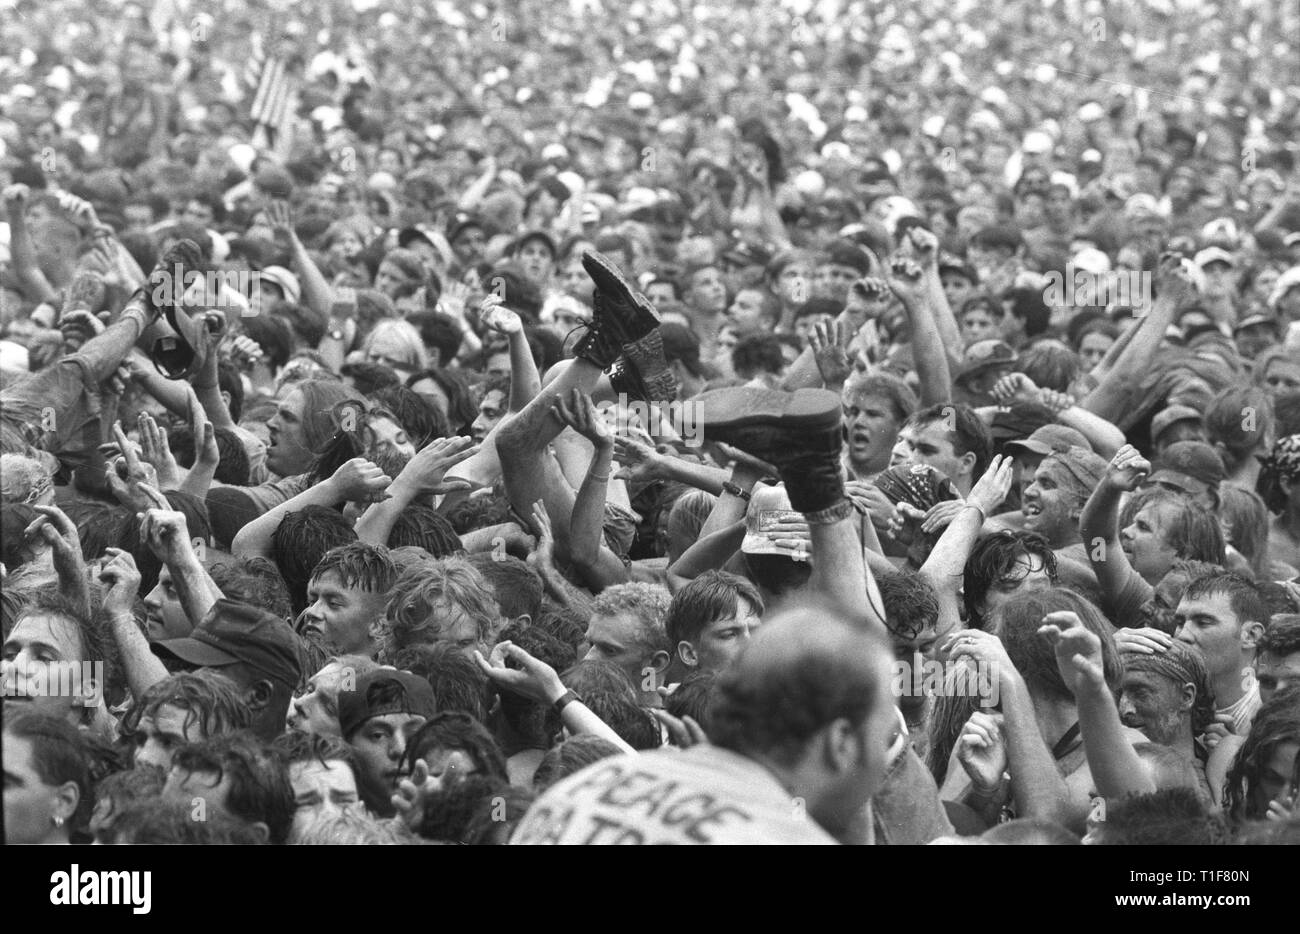 Stivali, gambe, braccia e mani sono tutti mostrati in movimento fuori nel concerto folla a Woodstock 94. Foto Stock